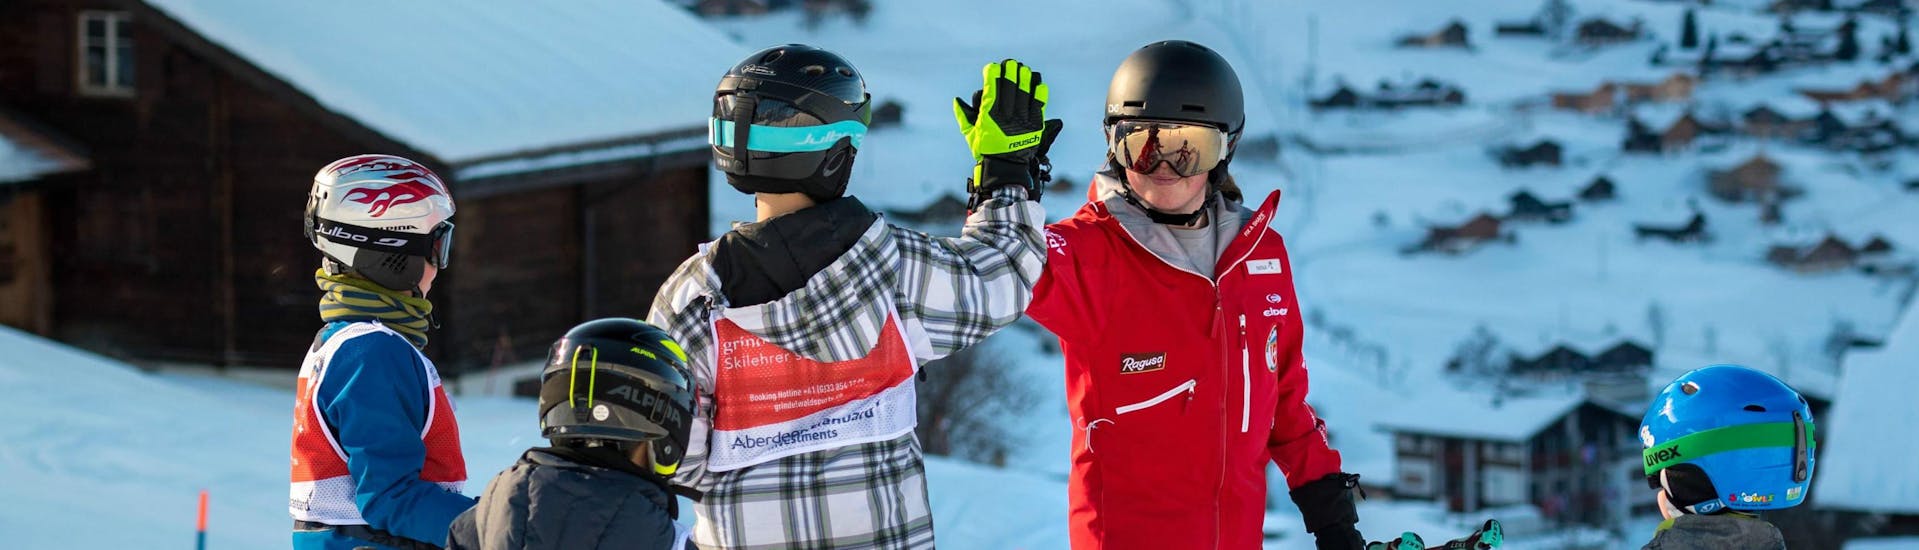 Eine Gruppe junger Skifahrern haben während ihrem Kinder-Skikurs für fortgeschrittene Skifahrer mit der Skischule Grindelwald Spaß mit ihren Skilehrer und geben ihm ein High-Five.